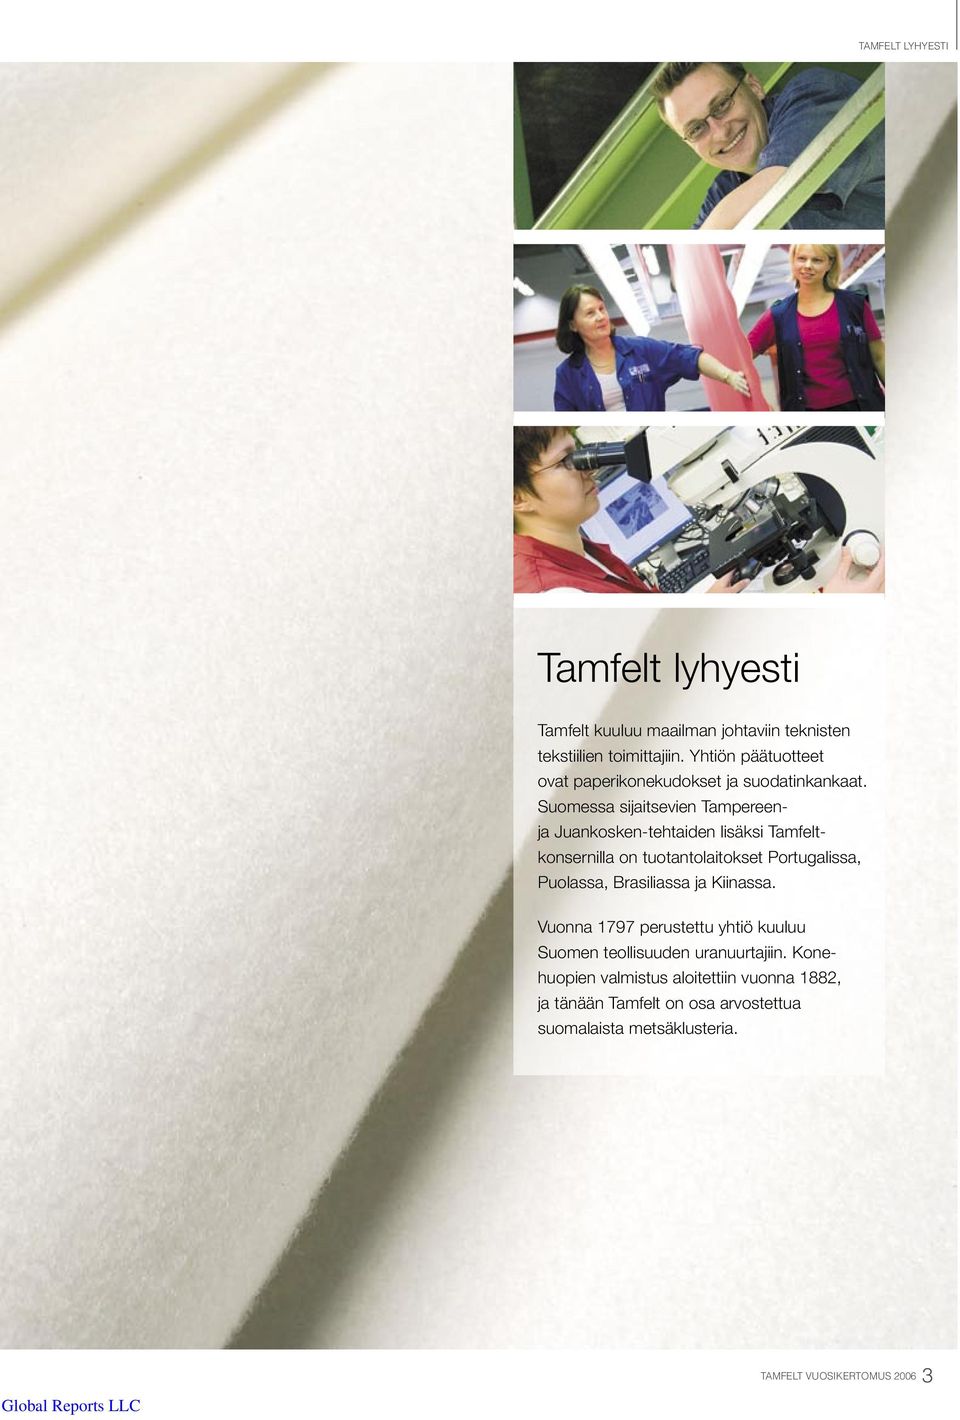 Suomessa sijaitsevien Tampereenja Juankosken-tehtaiden lisäksi Tamfeltkonsernilla on tuotantolaitokset Portugalissa, Puolassa,